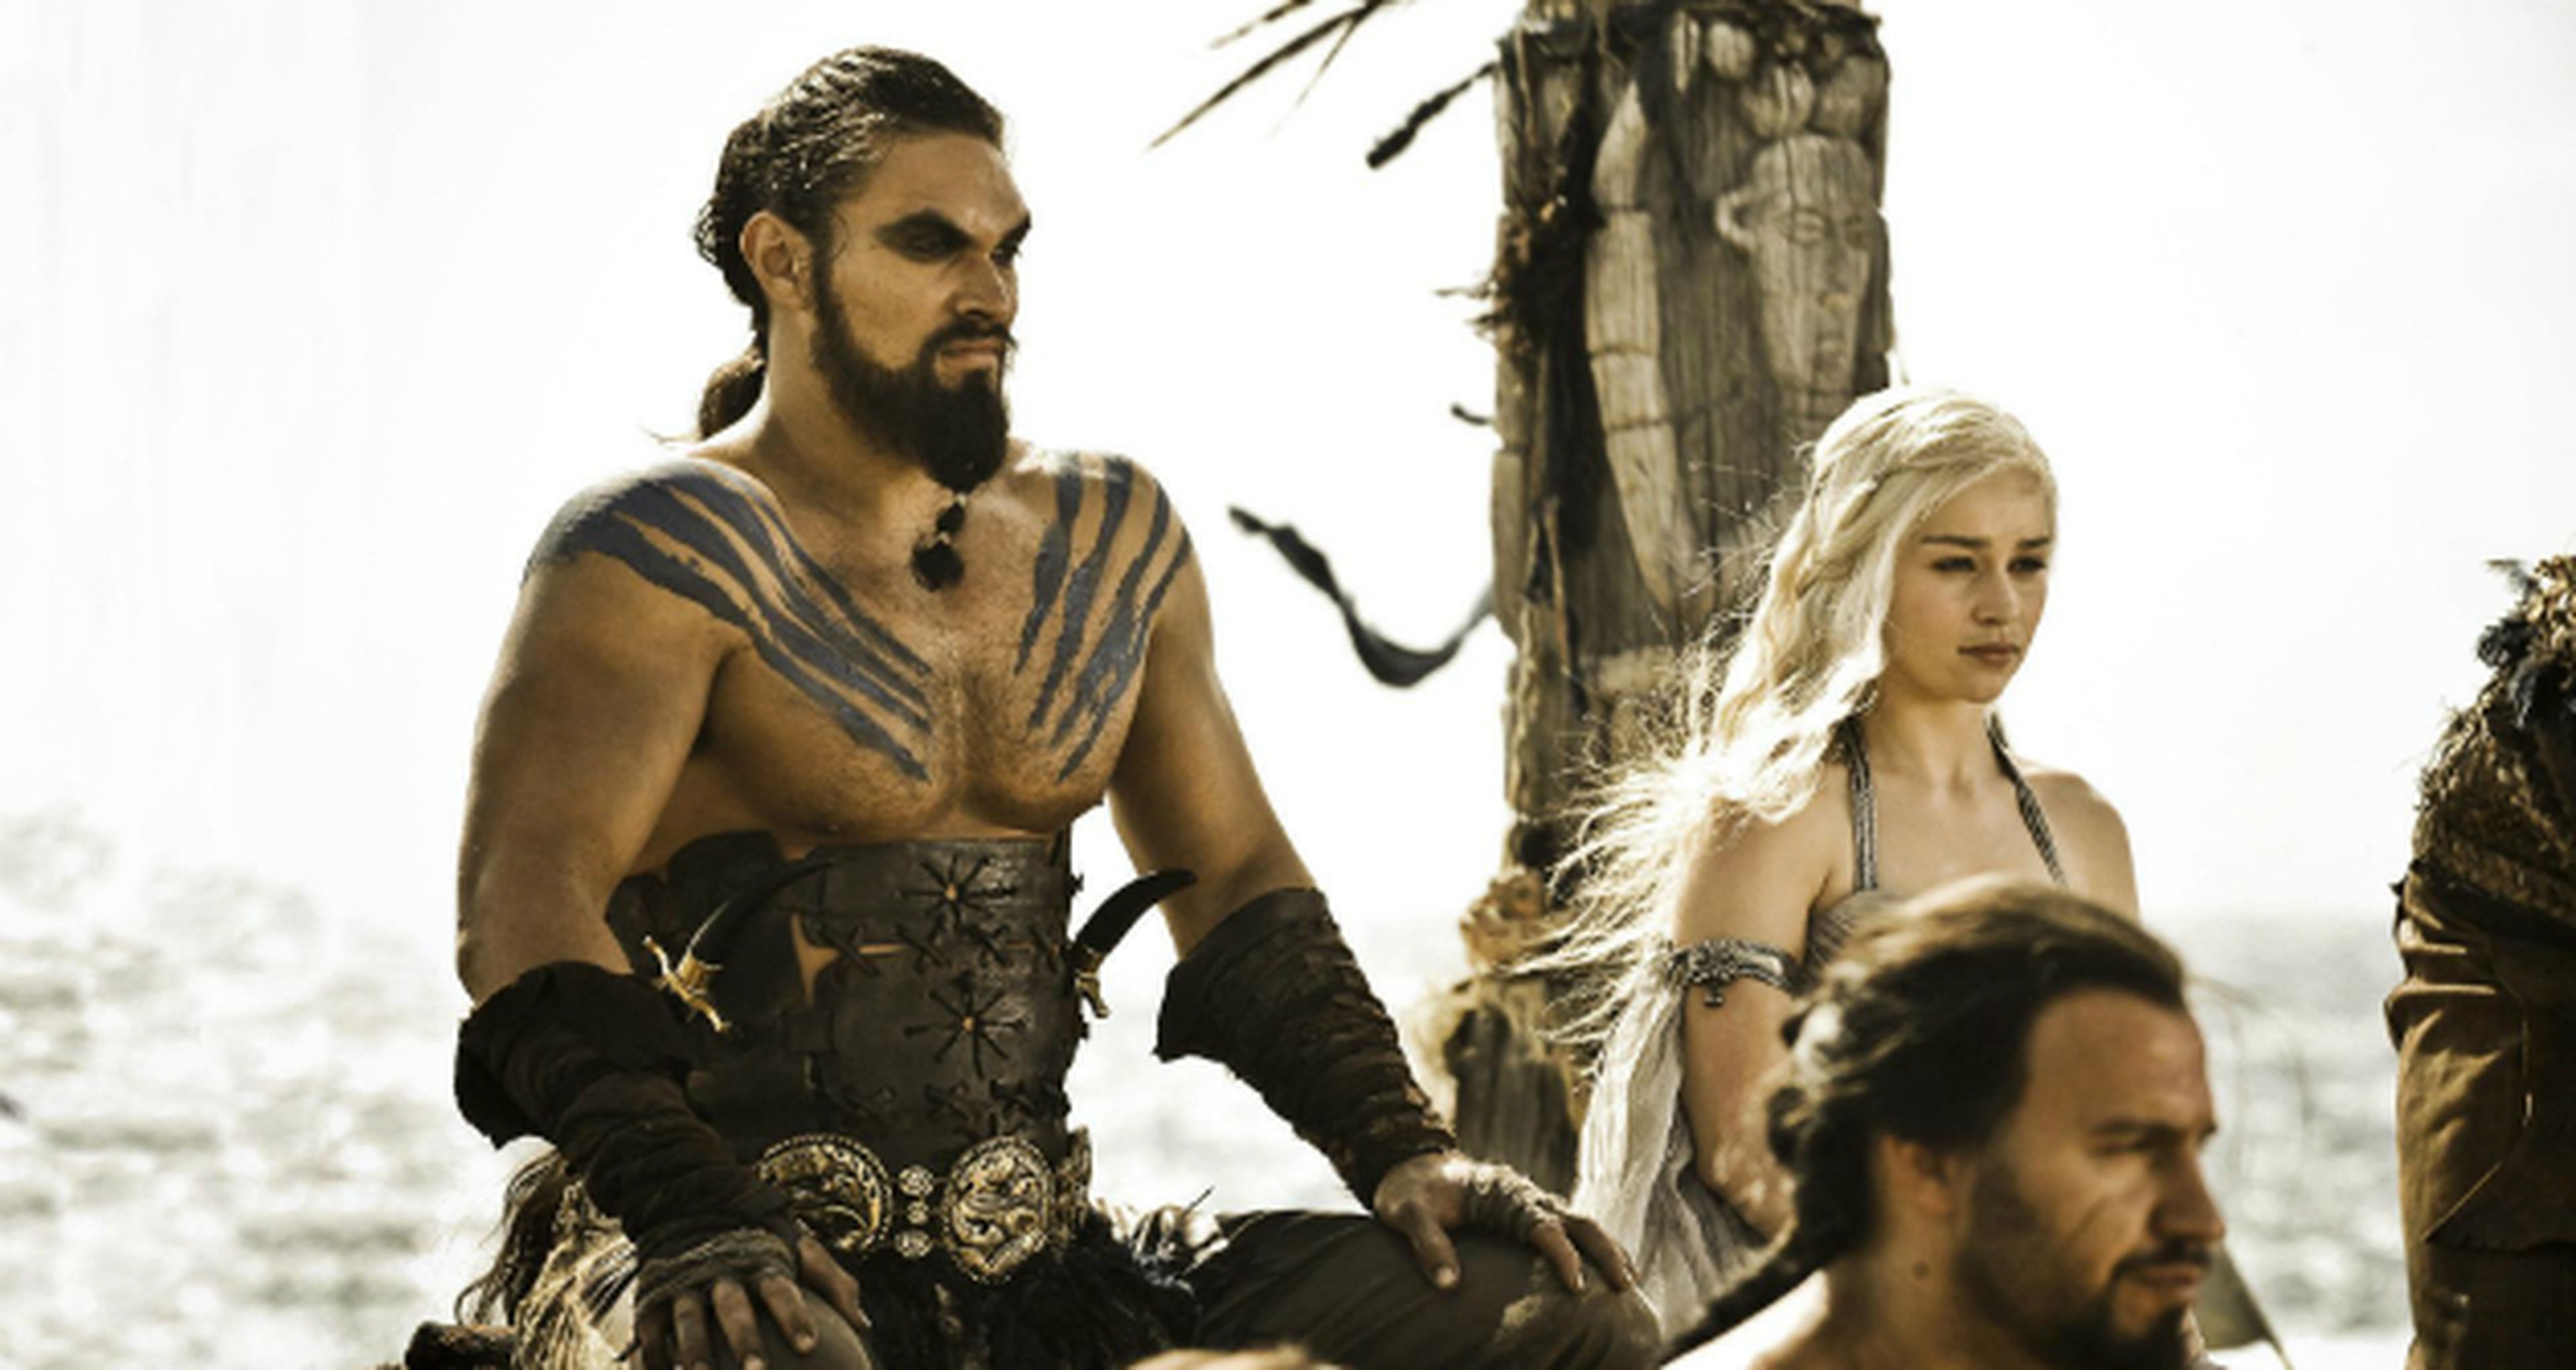 Juego de tronos: entrevista con el creador del dothraki, que nos enseña cómo hablarlo